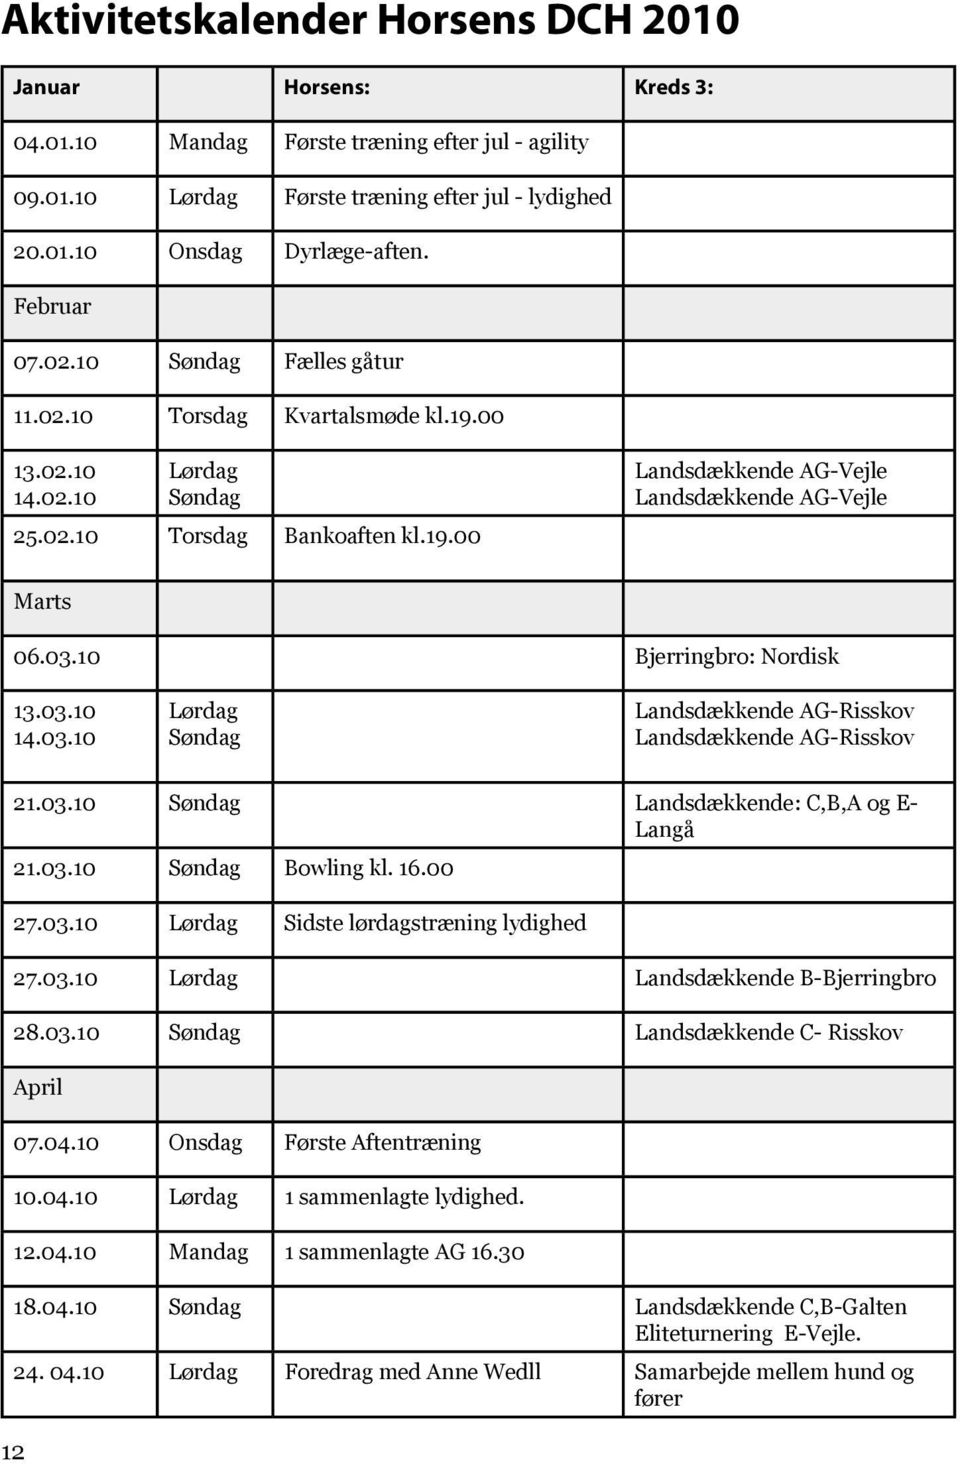 03.10 Bjerringbro: Nordisk 13.03.10 14.03.10 Lørdag Søndag Landsdækkende AG-Risskov Landsdækkende AG-Risskov 21.03.10 Søndag Landsdækkende: C,B,A og E- Langå 21.03.10 Søndag Bowling kl. 16.00 12 27.